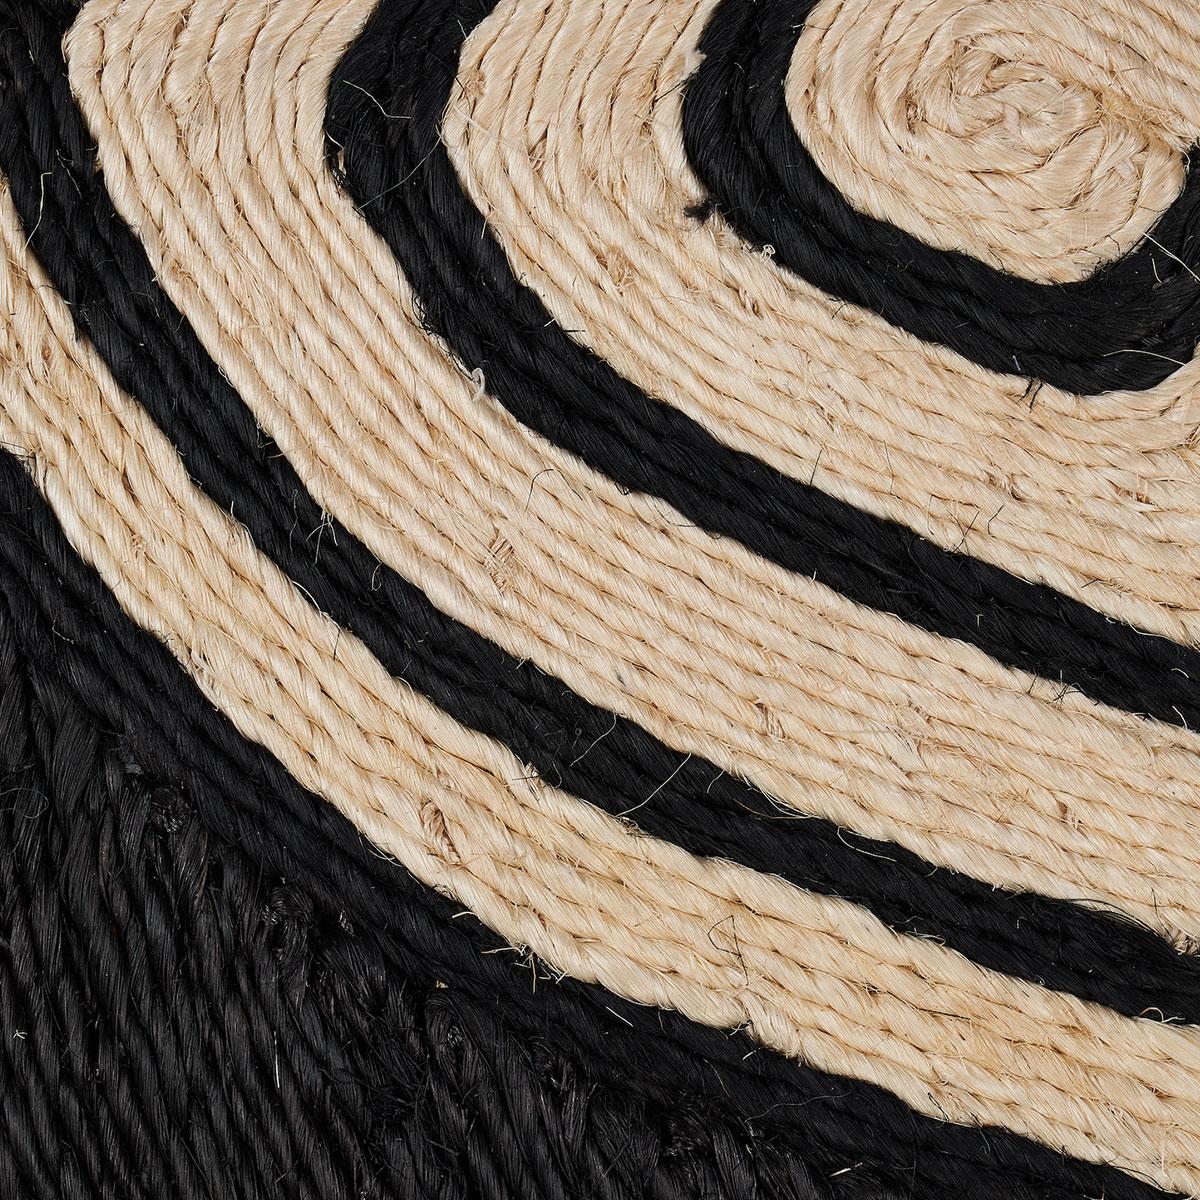 Conçu par Adam Charlap Hyman et inspiré des cabinets de curiosité du XVIIe siècle, le tapis Tortuga est une version ludique d'un spécimen naturel. L'abaca enroulé à la main forme les membres et la carapace de la tortue, ce qui donne à ce tapis une